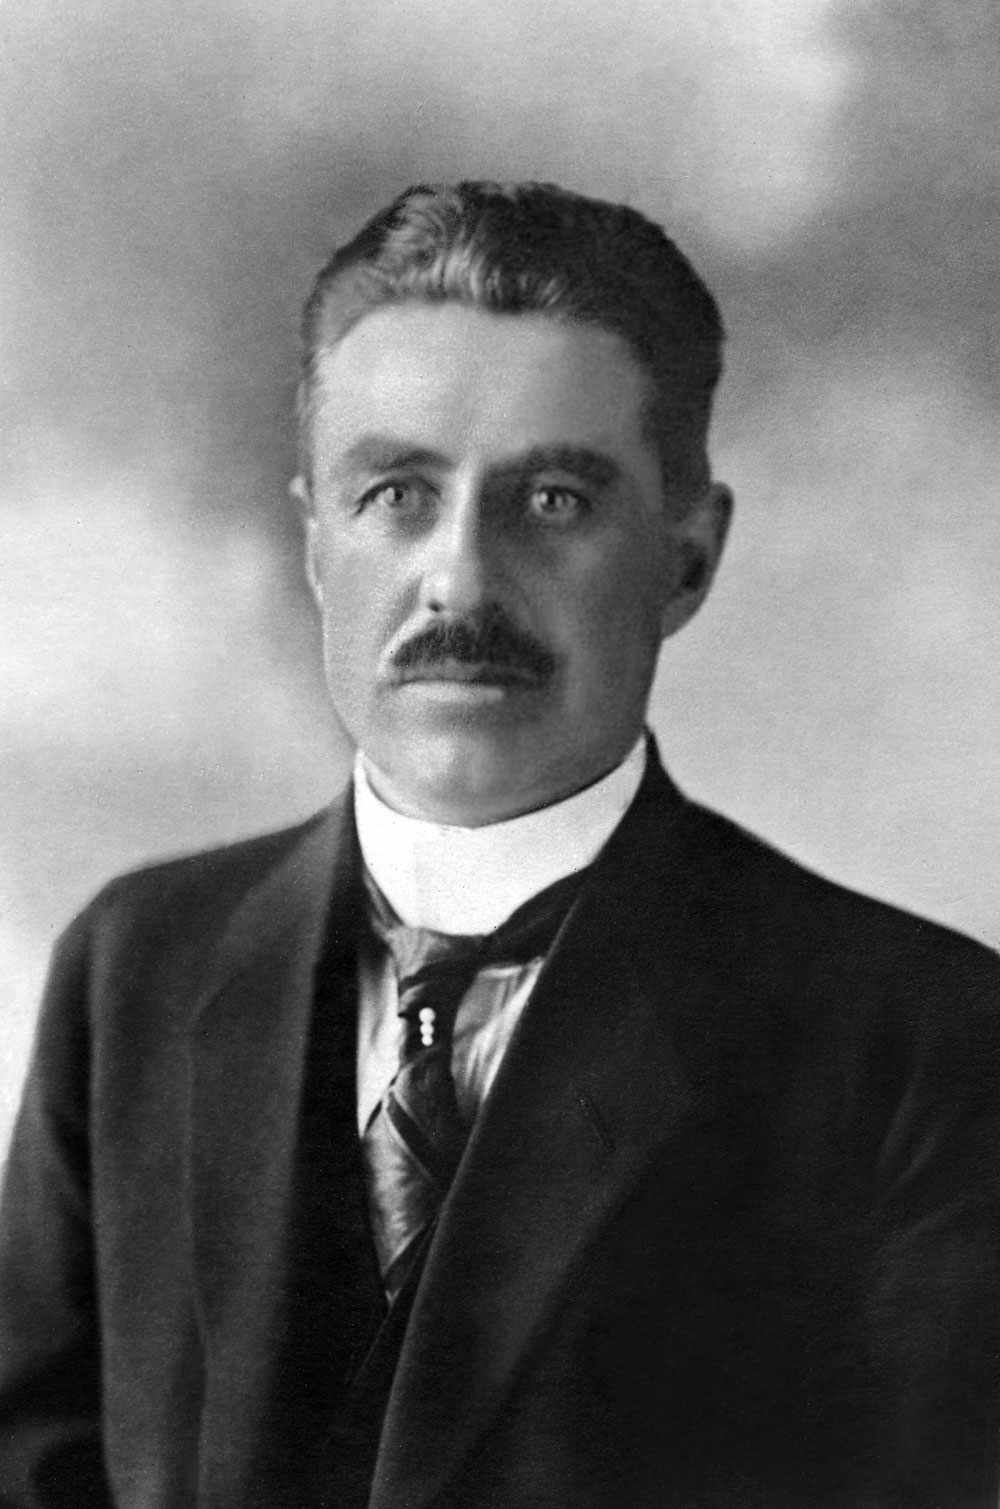 Porträtt i halvfigur av man med mustasch i mörk kavaj och slips.